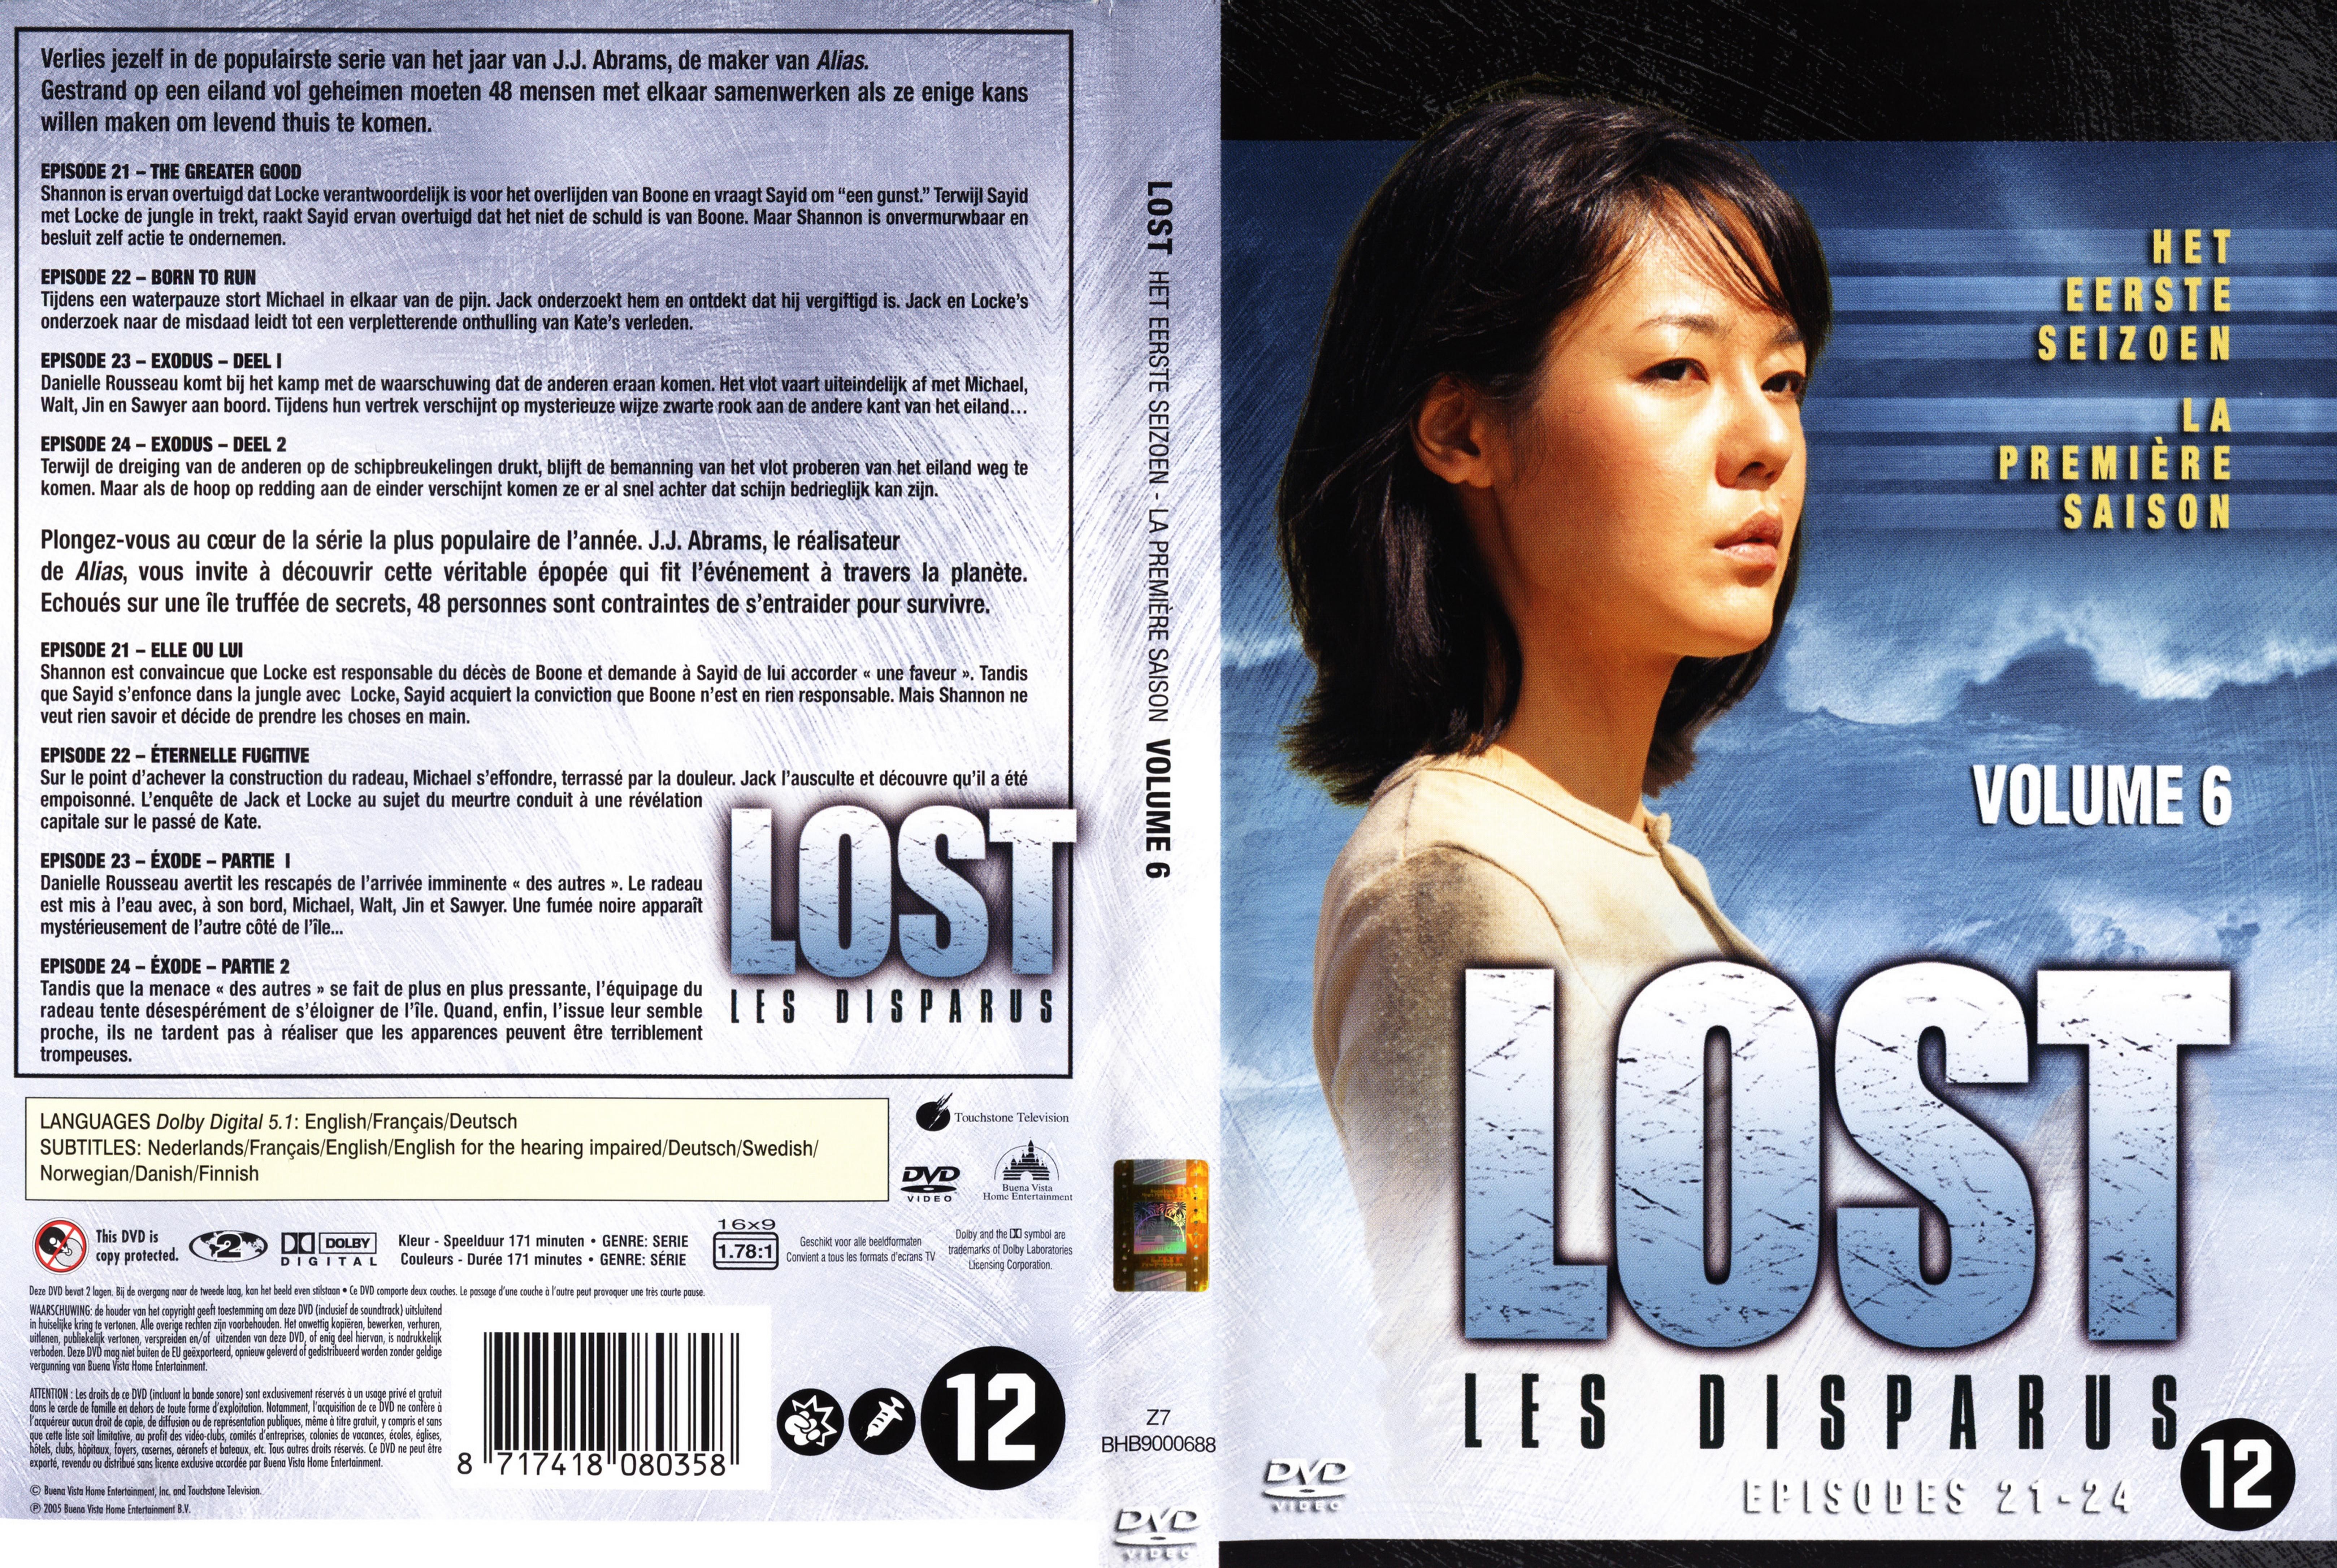 Jaquette DVD Lost Saison 1 DVD 6 v2